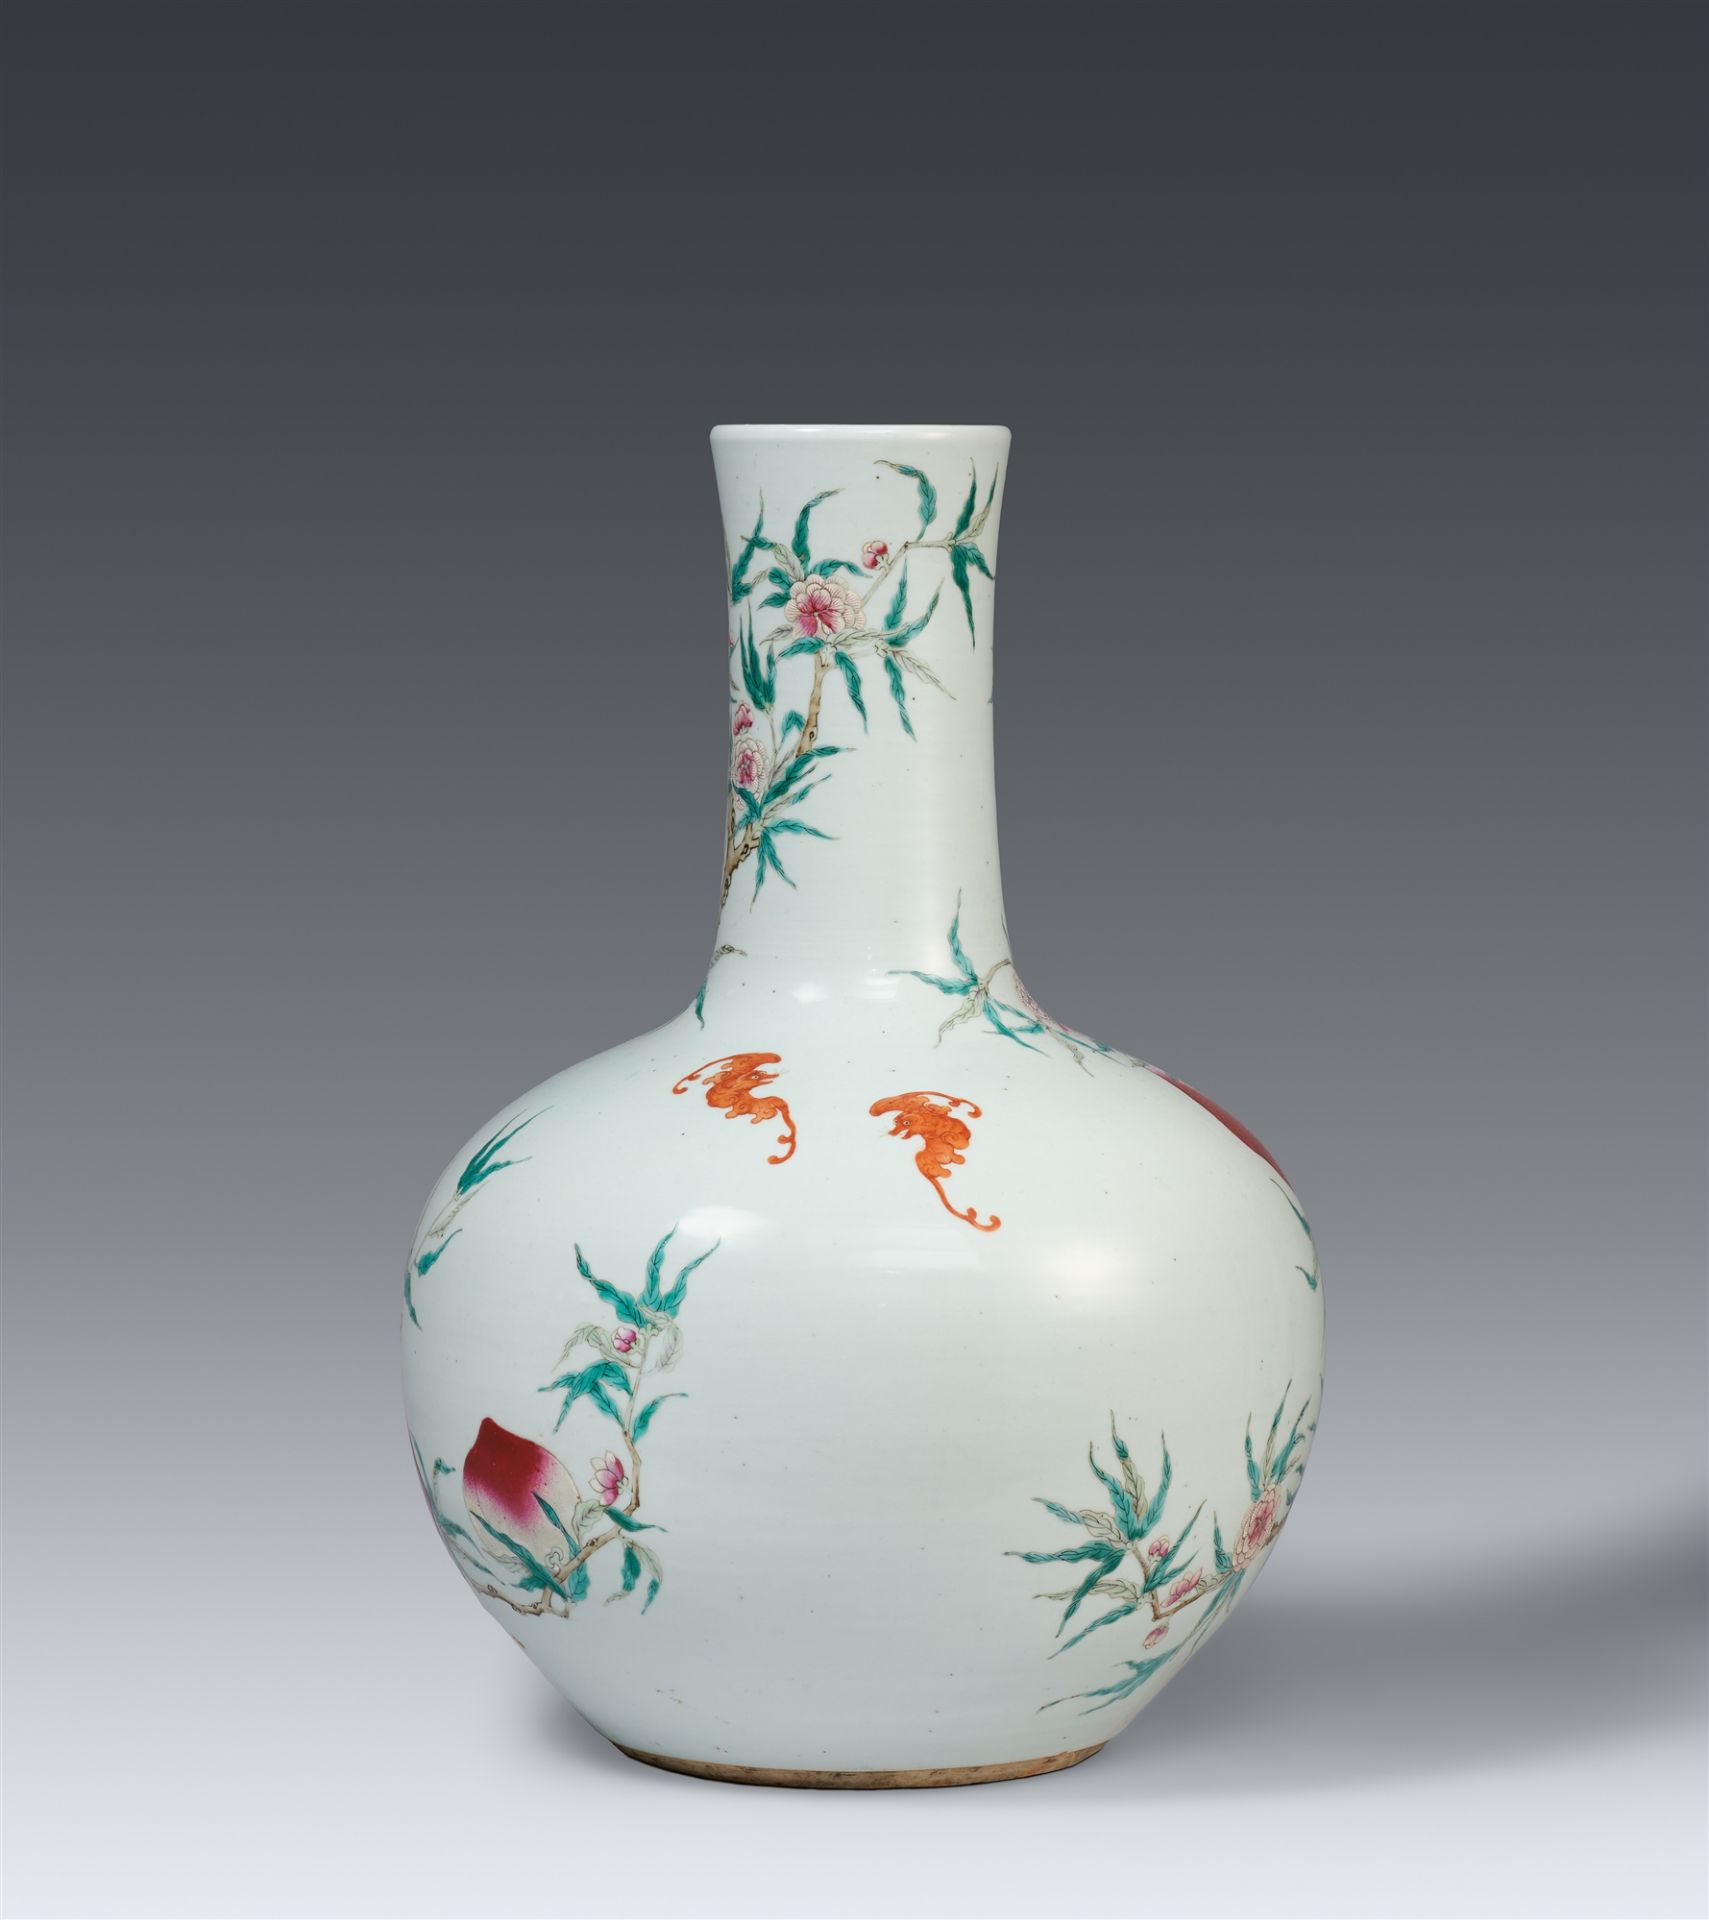 Große famille rose-Vase mit Neun-Pfirsich-Dekor. Qing-Zeit, 19. Jh./ frühes 20. Jh. - Bild 2 aus 2